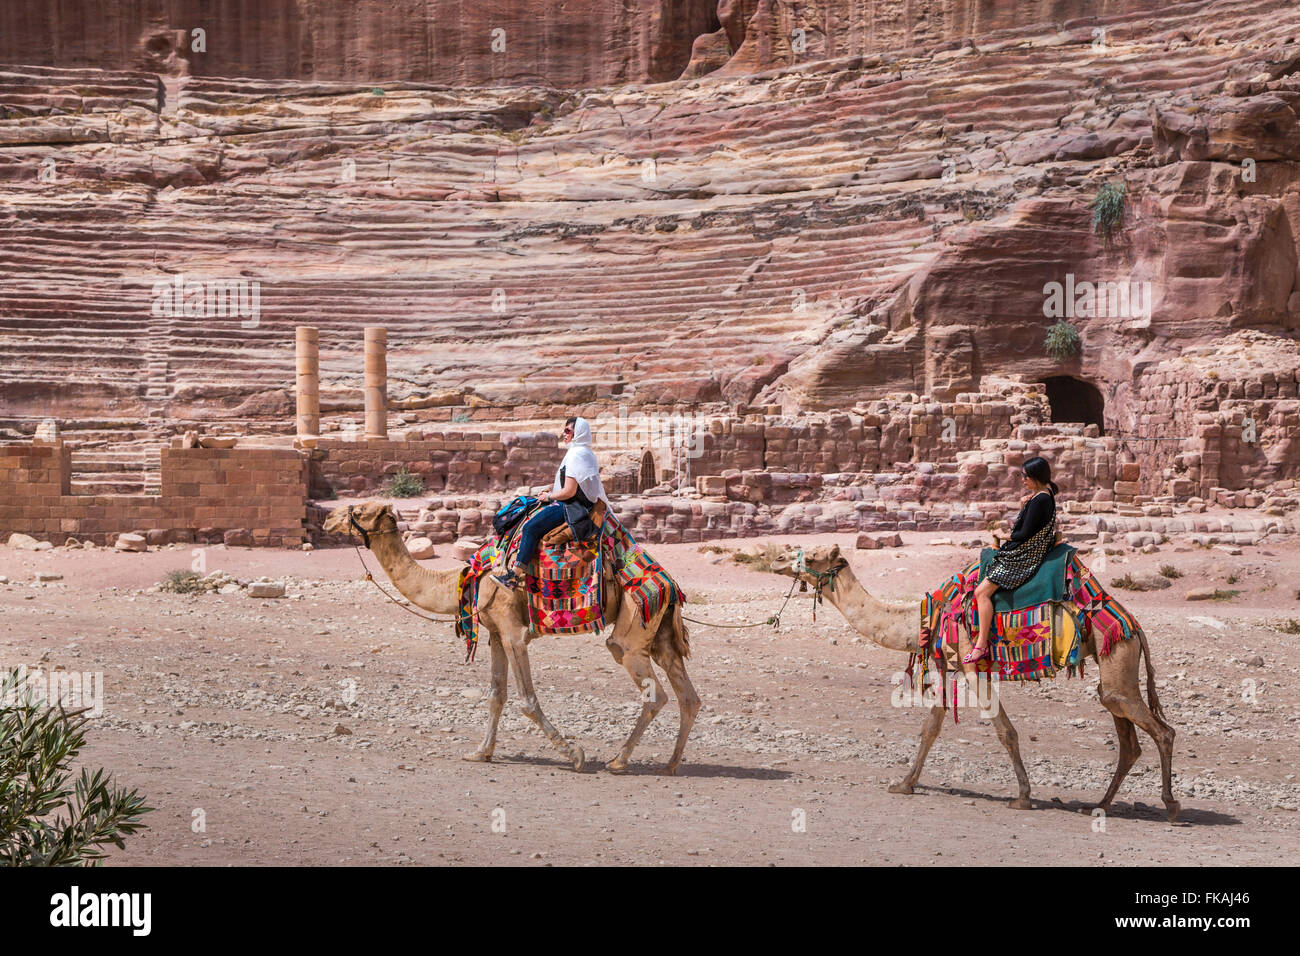 Chameaux avec des couvertures colorées dans les ruines de Pétra, Royaume hachémite de Jordanie, Moyen-Orient. Banque D'Images